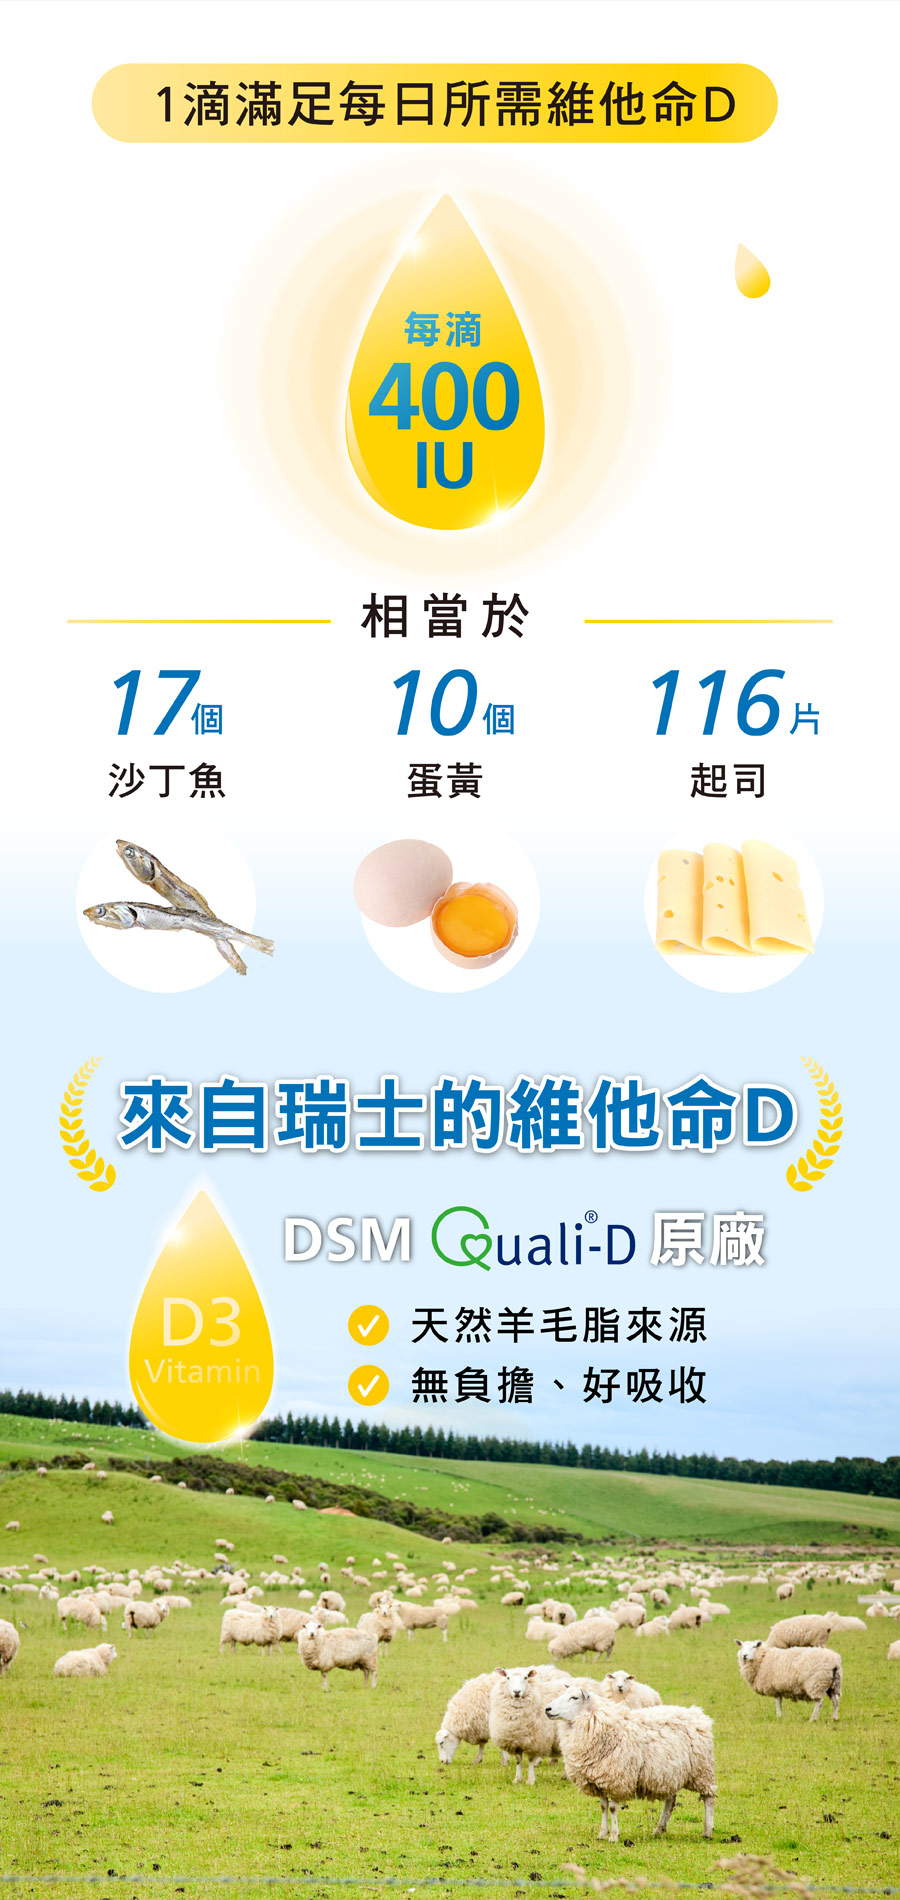 DSM瑞士大廠Quali-D 維他命D3，一滴400IU，亞尼活力液態維他命D3幫你滿足每天營養所需